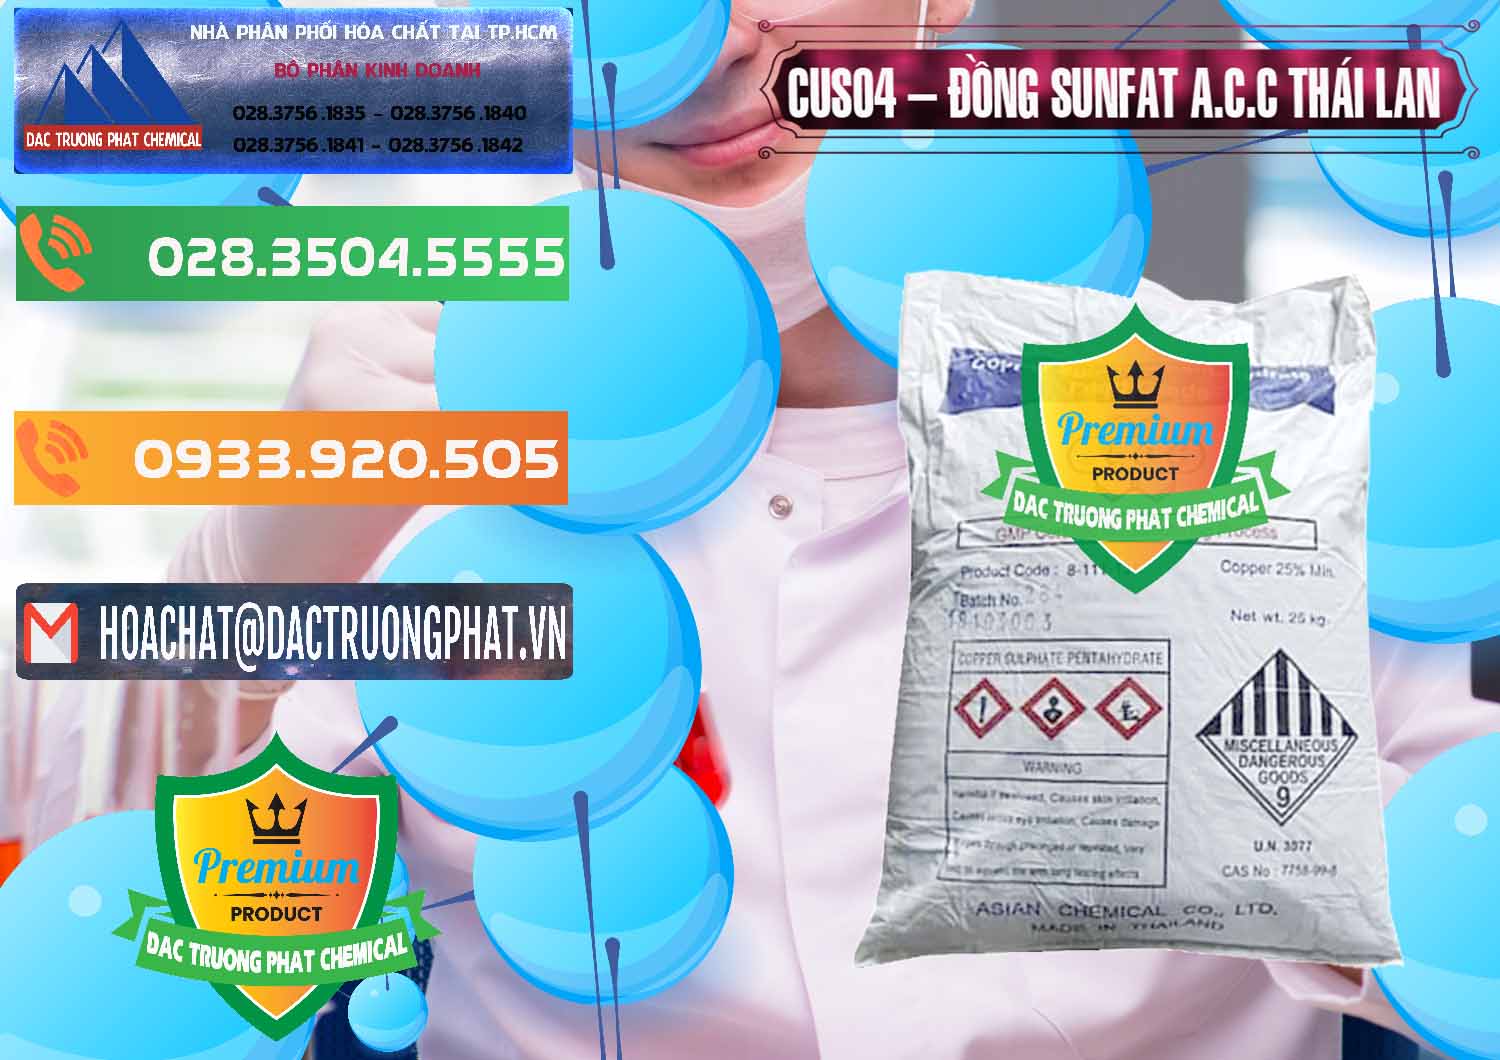 Công ty chuyên cung cấp và bán CuSO4 – Đồng Sunfat A.C.C Thái Lan - 0249 - Nơi chuyên kinh doanh & phân phối hóa chất tại TP.HCM - hoachatxulynuoc.com.vn